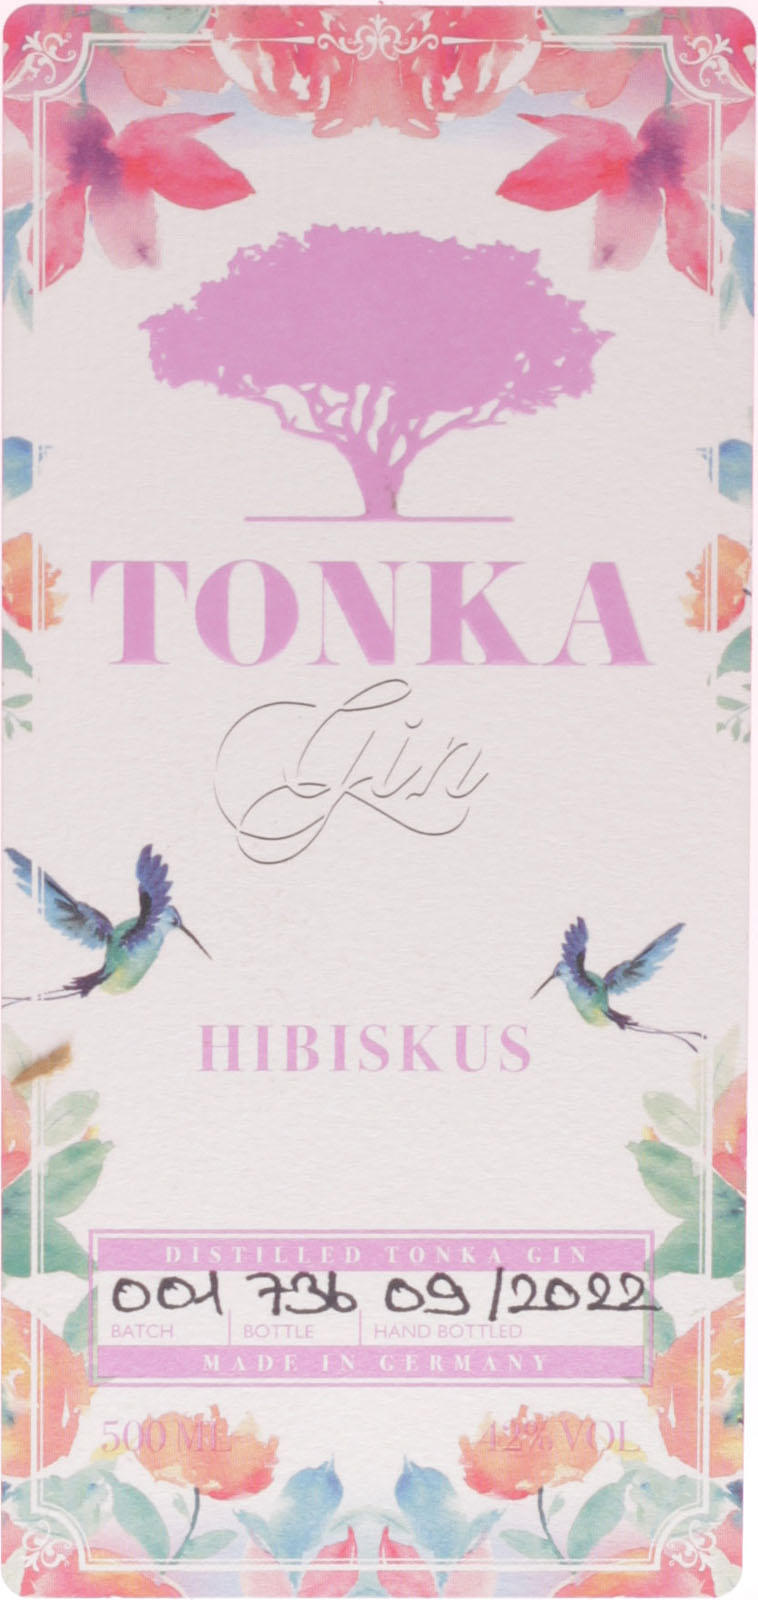 Tonka Hibiskus Gin günstig und schnell bei uns im Shop